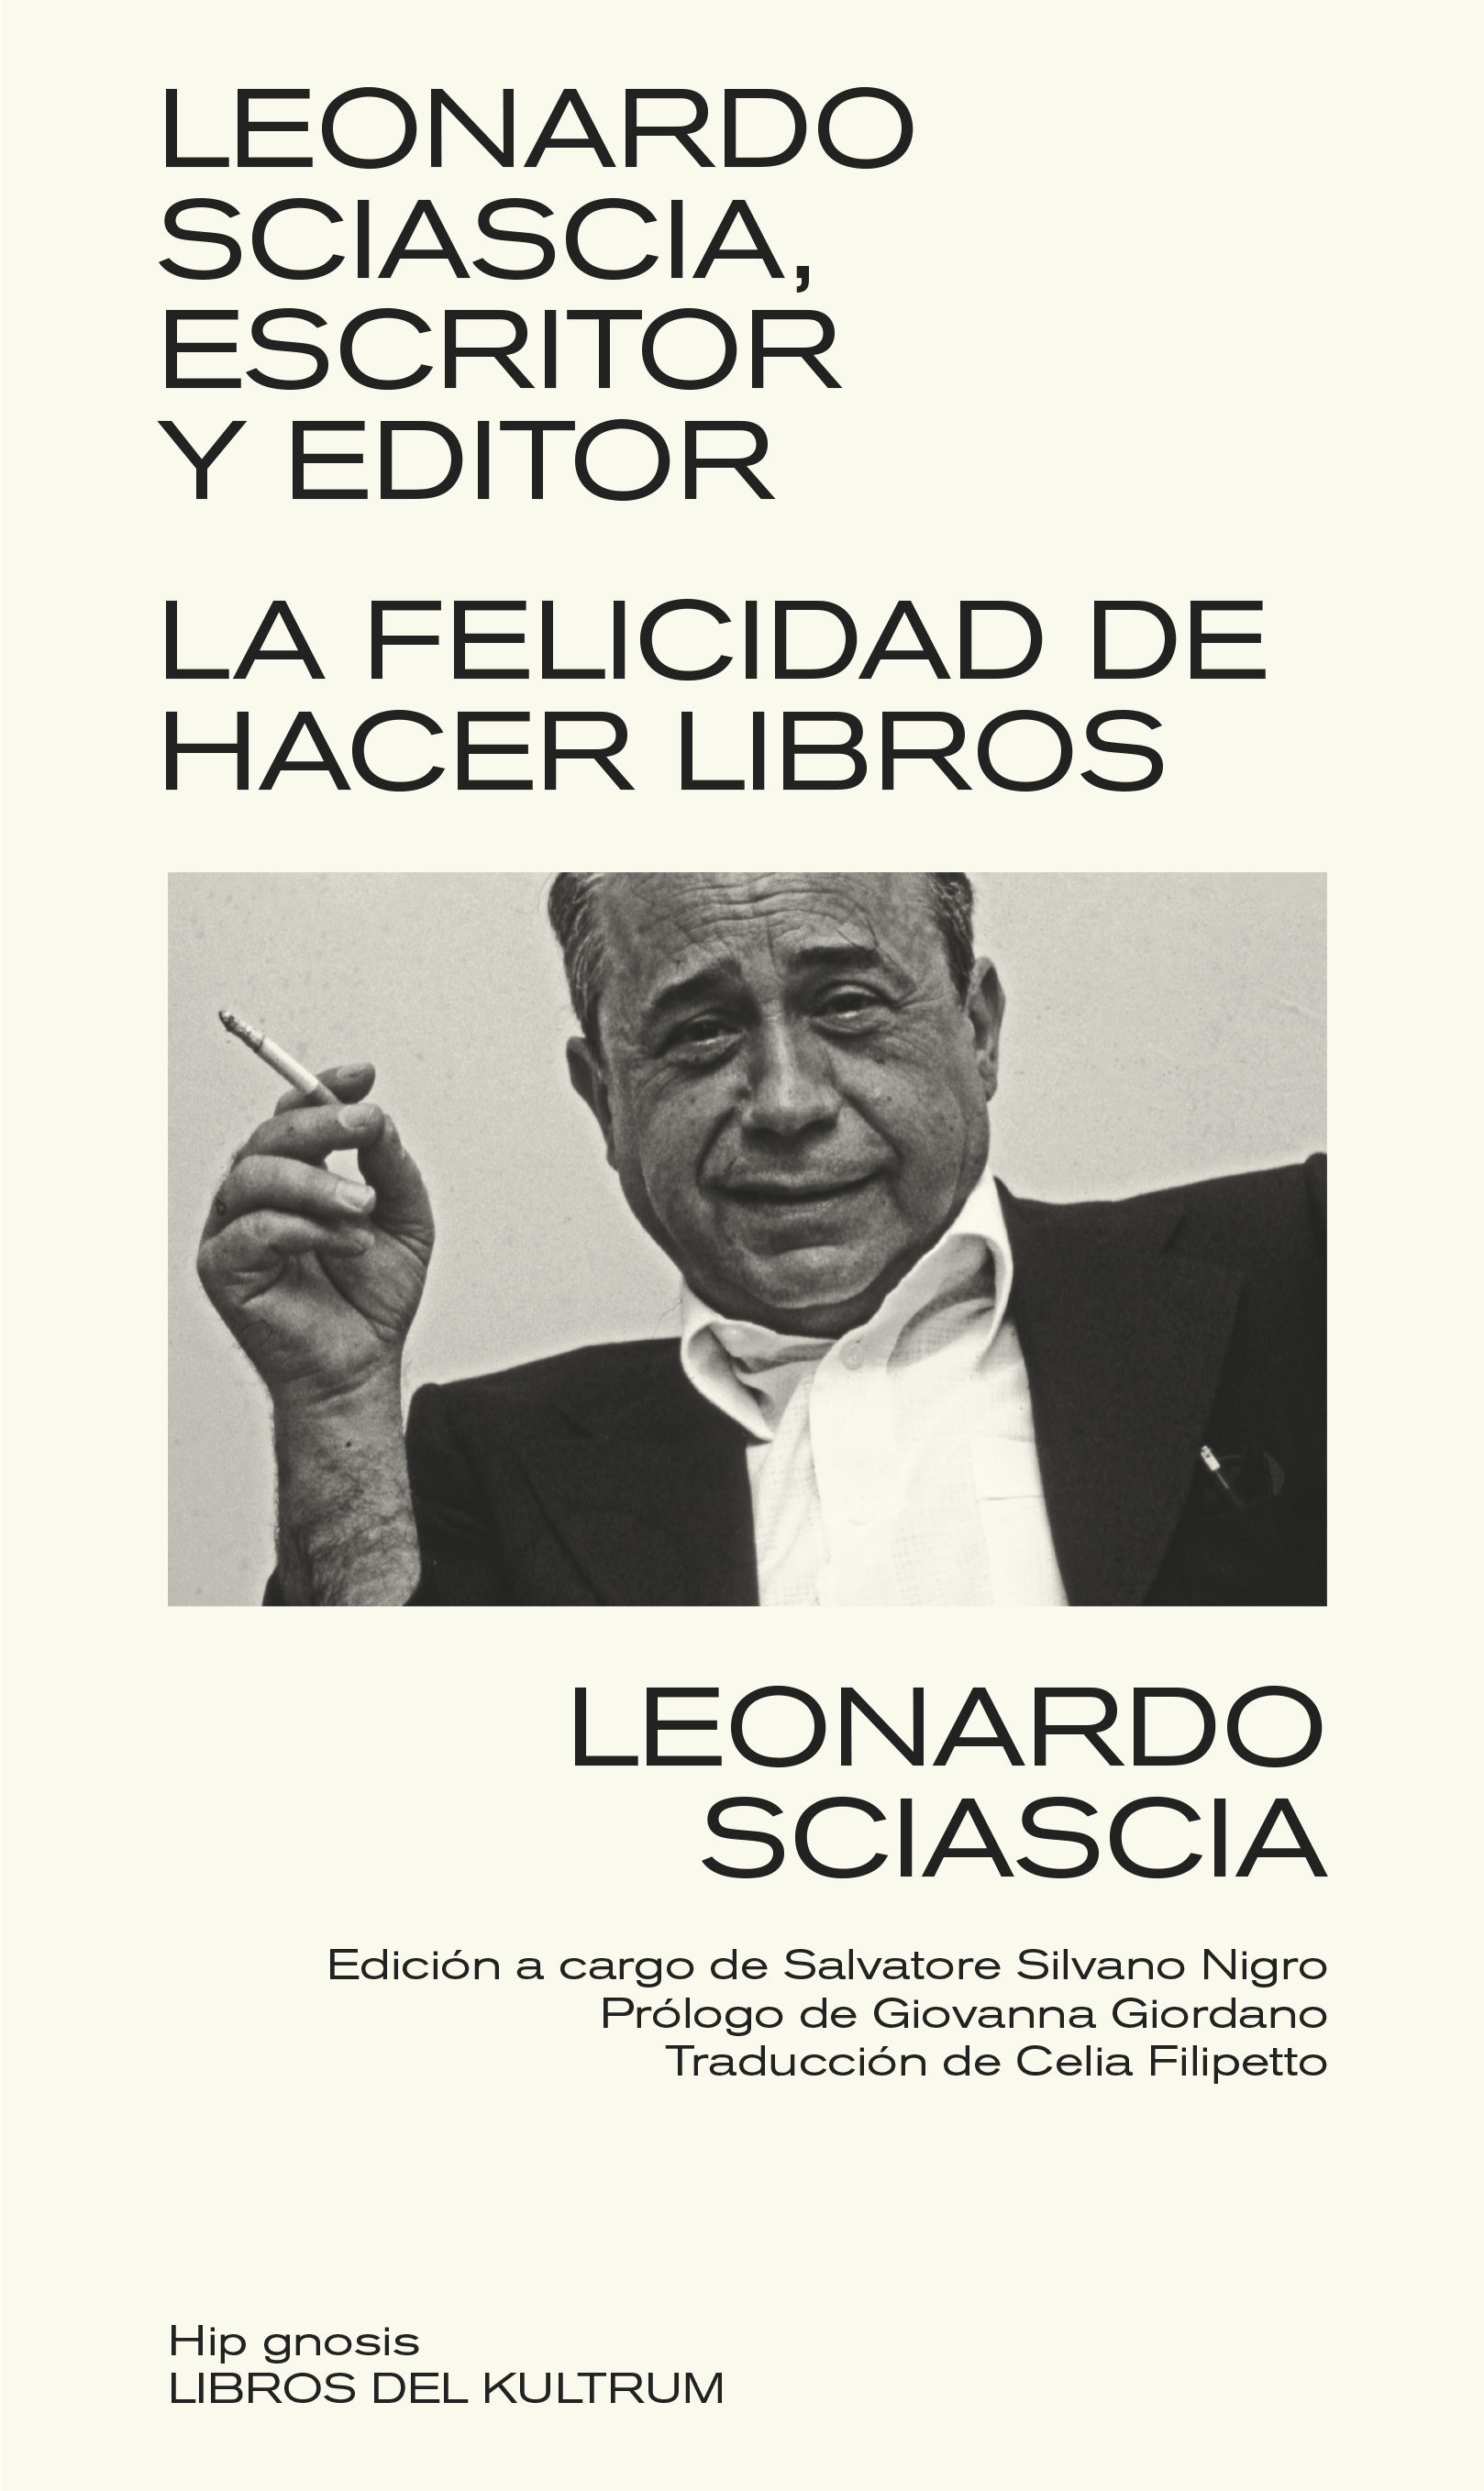 LEONARDO SCIASCIA, ESCRITOR Y EDITOR. EL PLACER DE HACER LIBROS